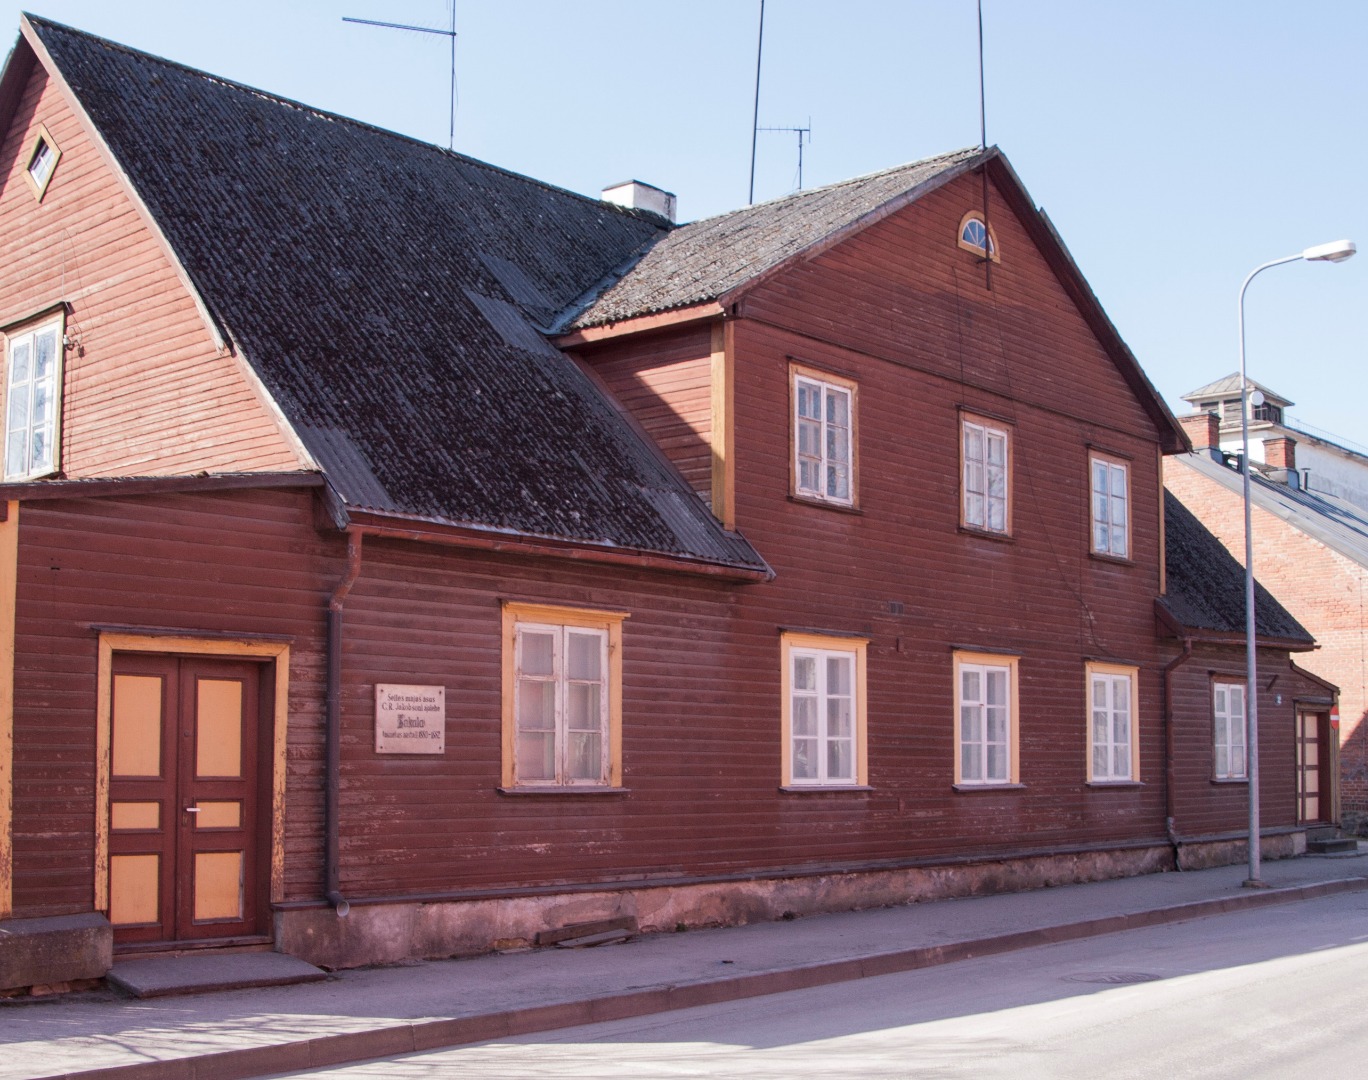 House in Viljandi, C. R. Jakobson Sakala edited in 1880-1882. Origin. Vm 3753. rephoto